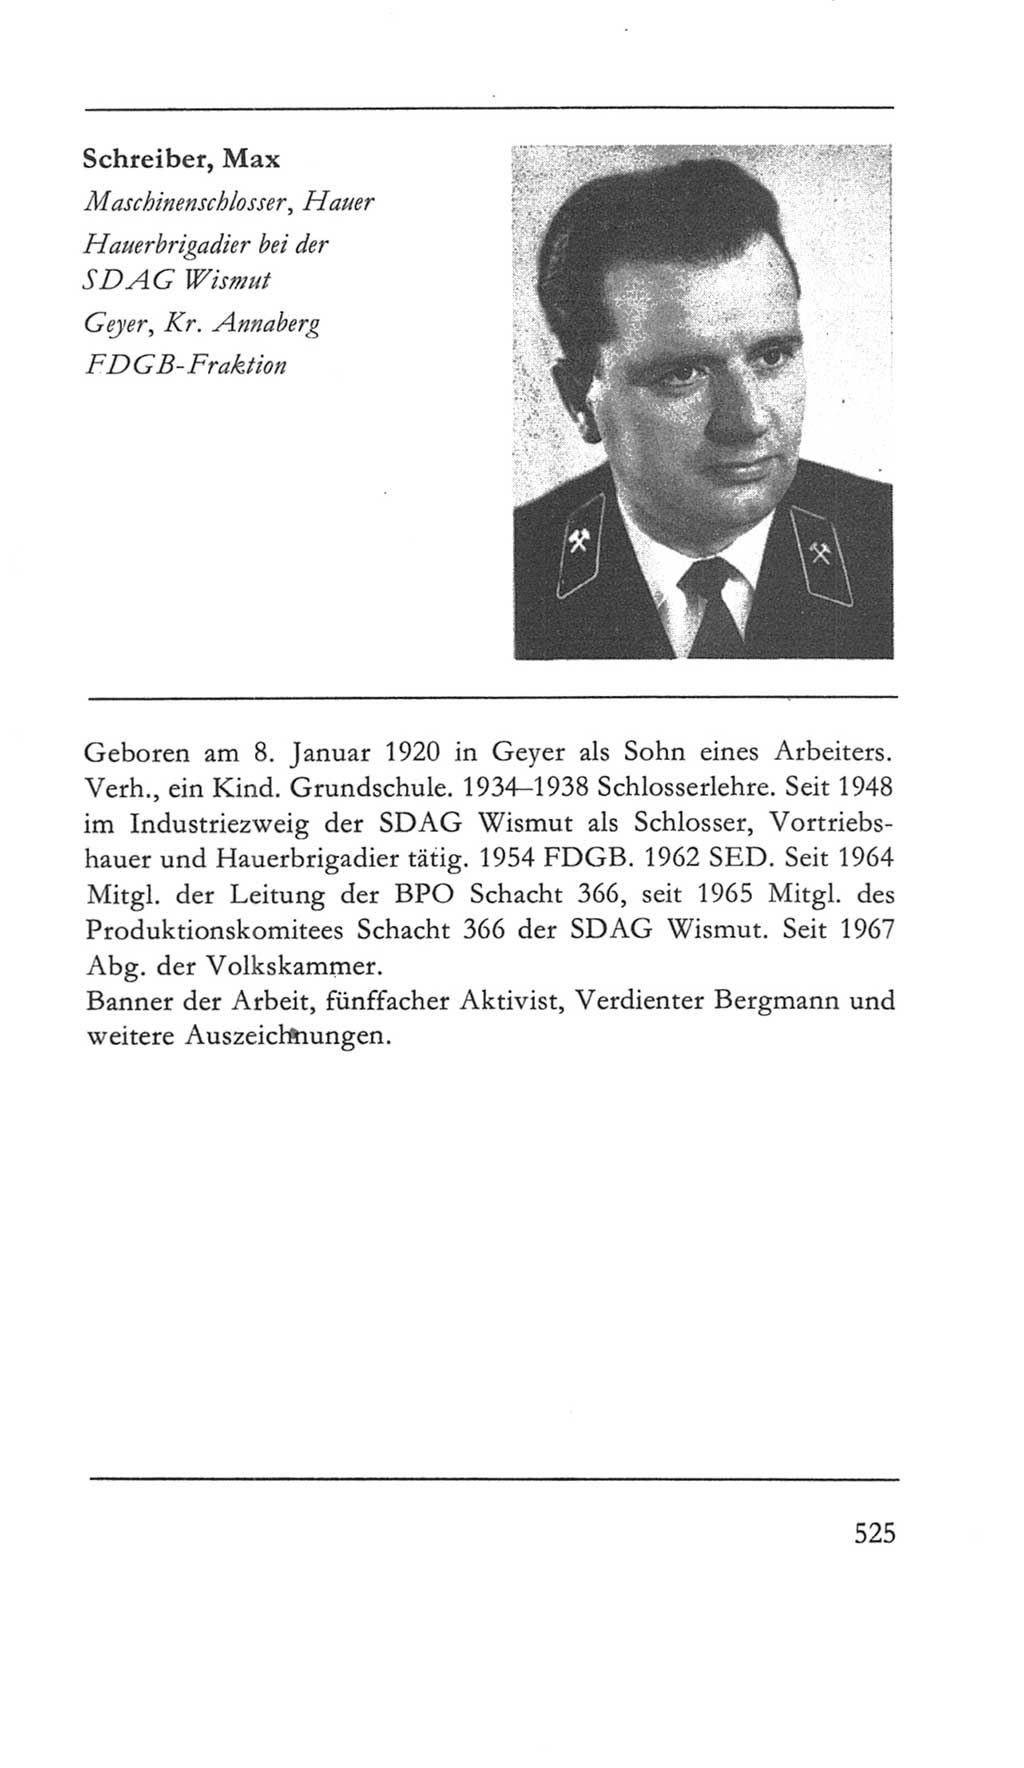 Volkskammer (VK) der Deutschen Demokratischen Republik (DDR) 5. Wahlperiode 1967-1971, Seite 525 (VK. DDR 5. WP. 1967-1971, S. 525)